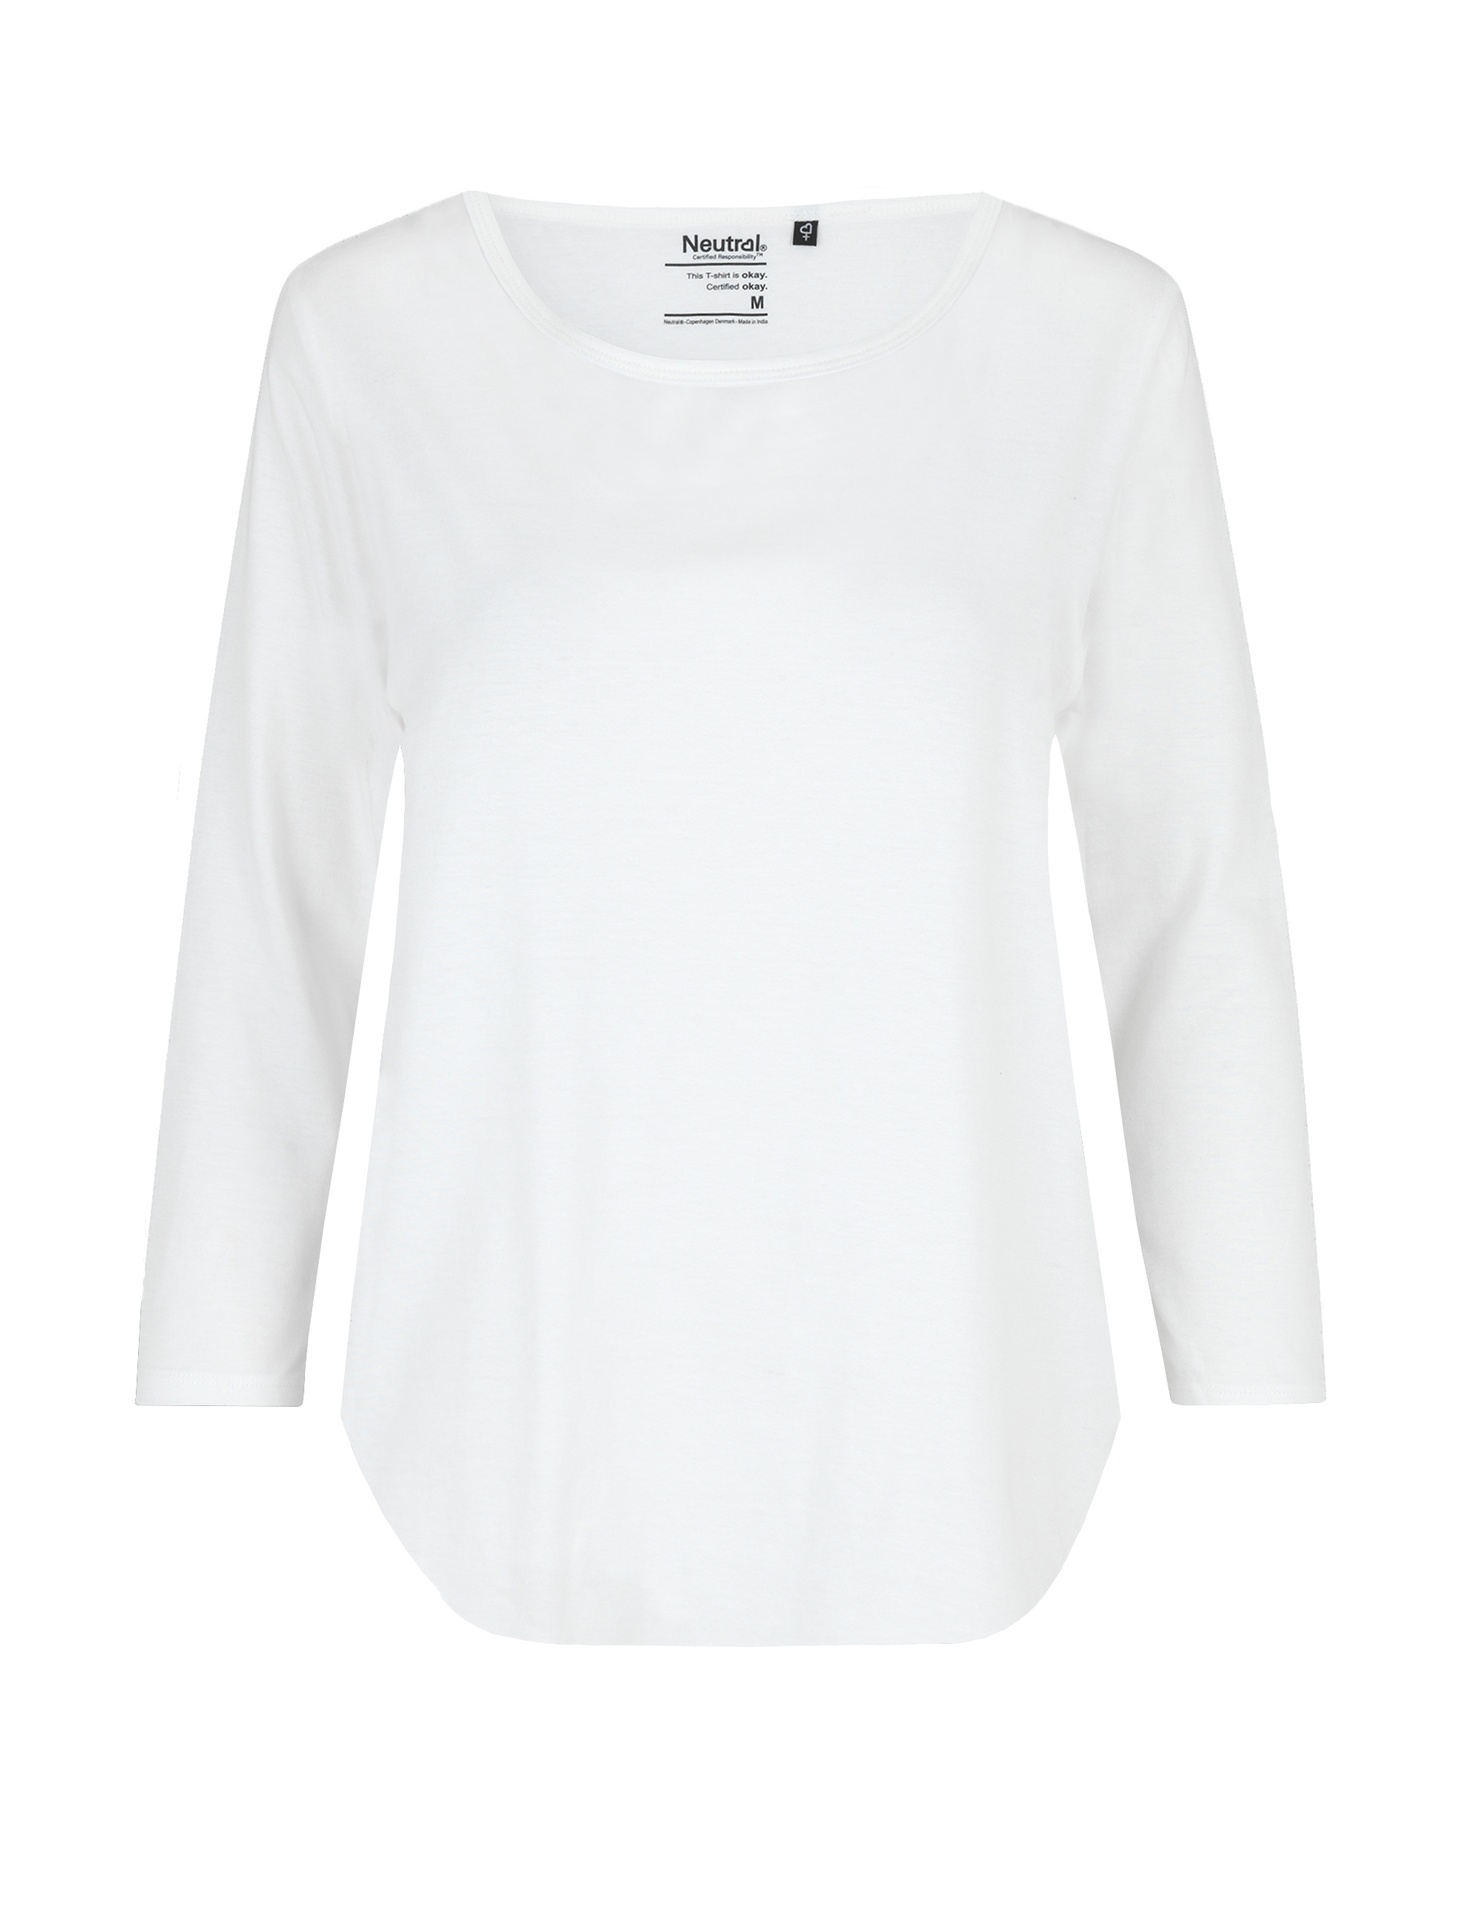 [PR/04522] Ladies Three Quarter Sleeve T-Shirt (White 01, L)